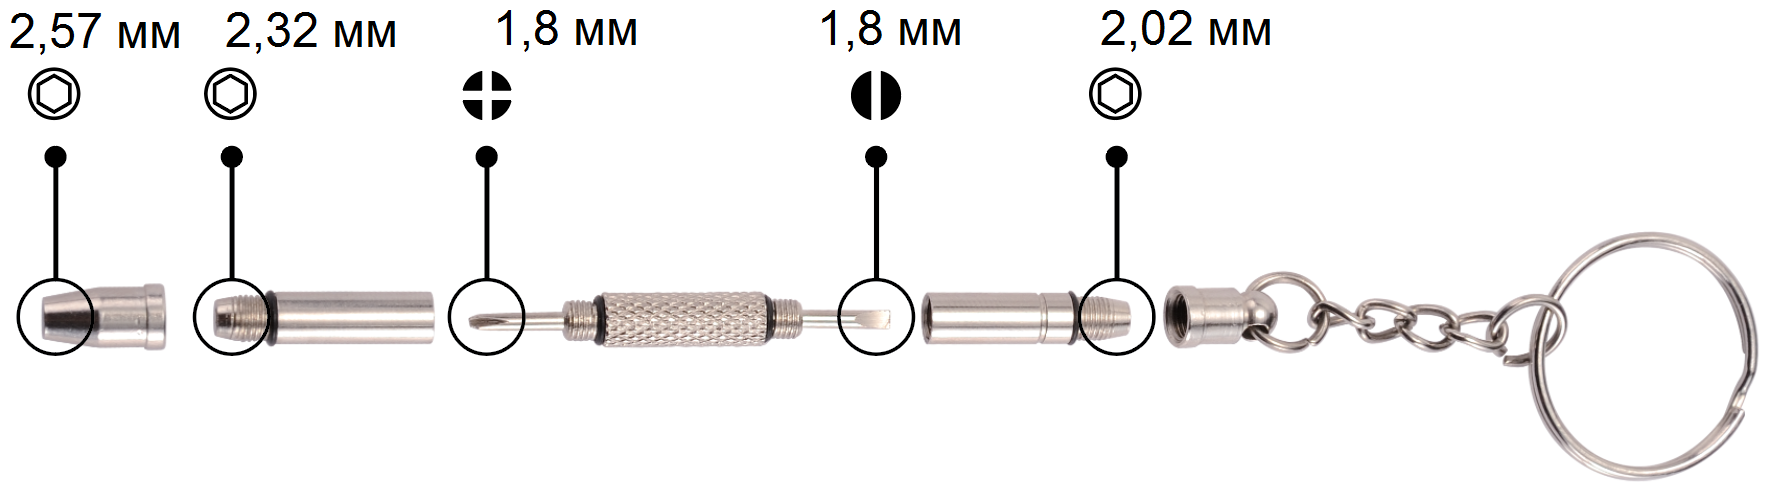 Многофункциональный набор из 5-и инструментов для мелкого ремонта OptiTech брелок-отвёртка